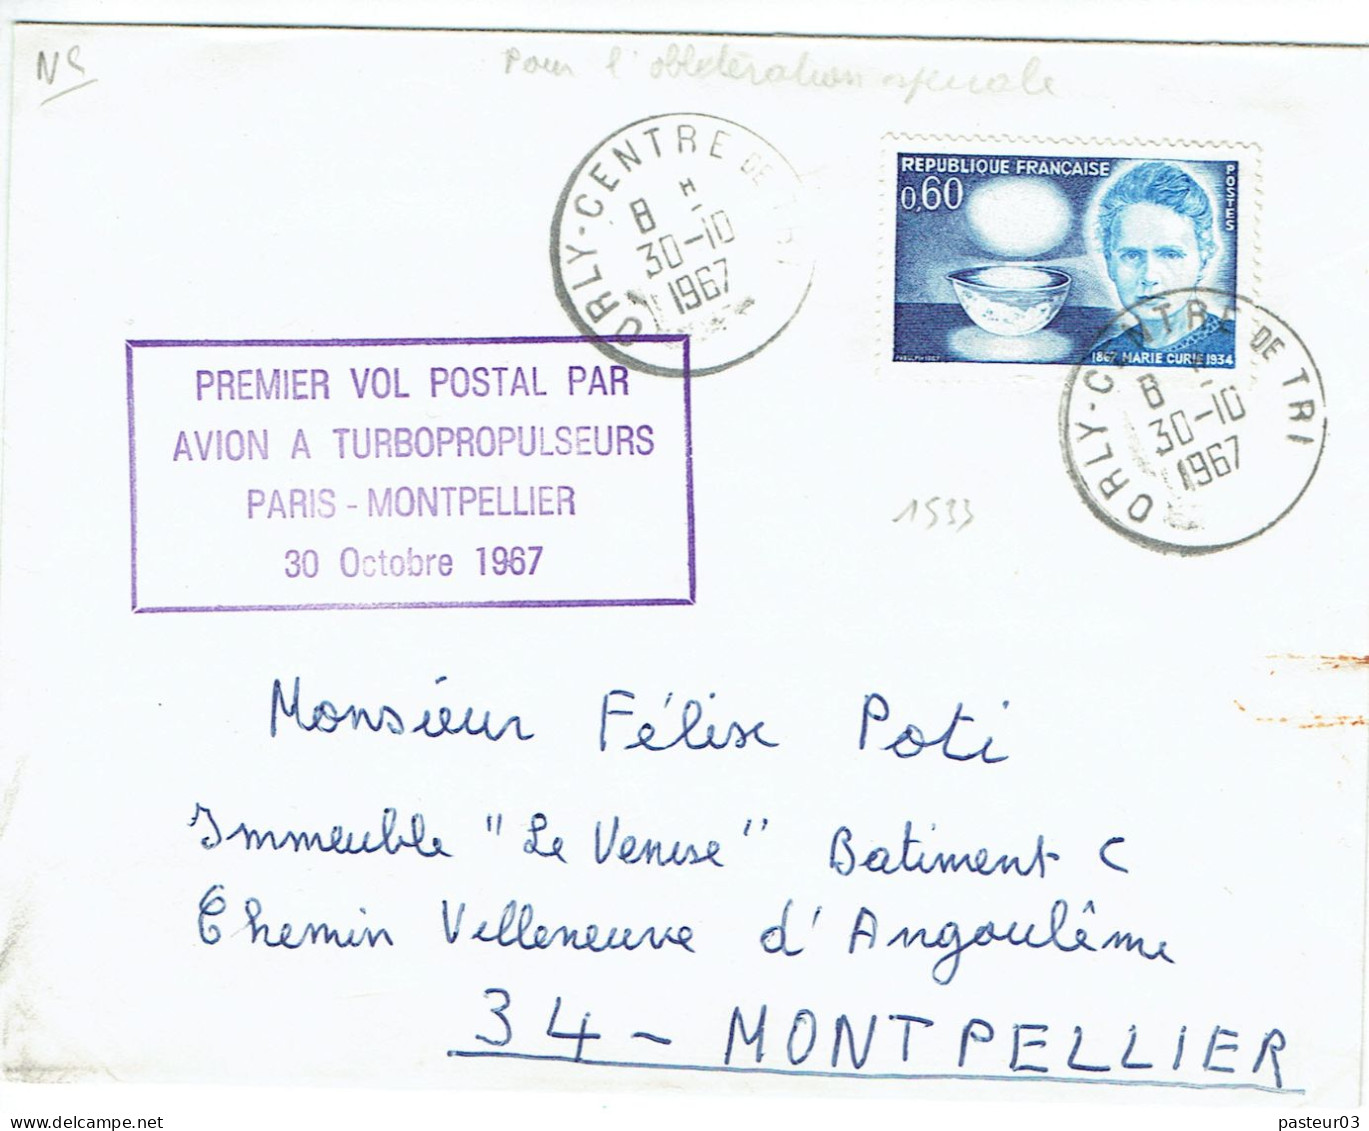 Premier Vol Postal Par Avion à Turbopropulseurs Paris Montpellier 30 Octobre 1967 Timbre N° 1533 De France TaD Orly Cent - 1960-.... Briefe & Dokumente